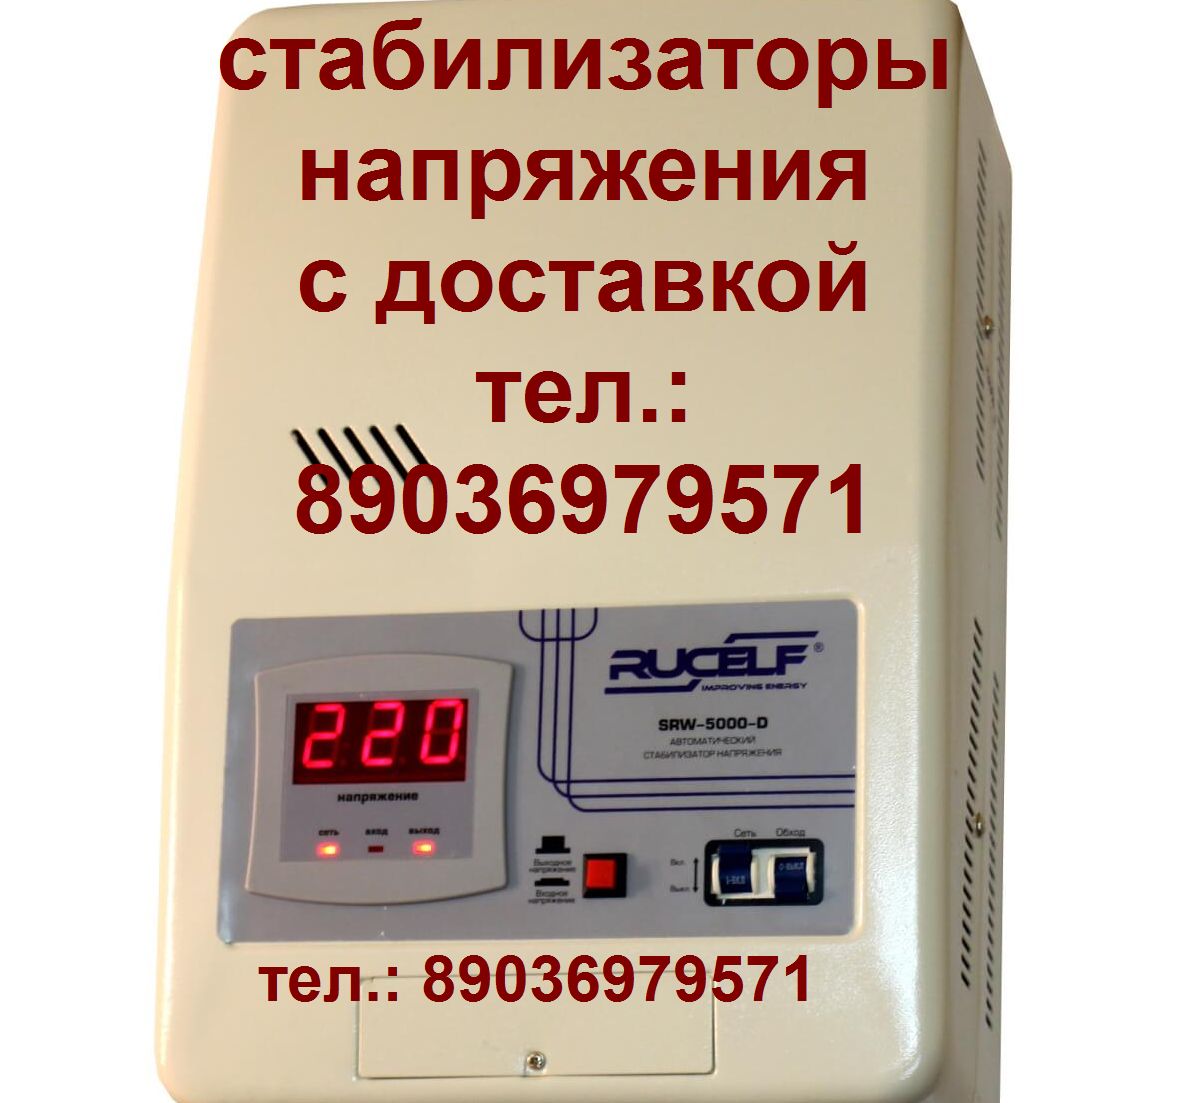 Пассик на Вегу 109 пассики Вега 109 Unitra G-602 в городе Москва, фото 2, телефон продавца: +7 (903) 697-95-71